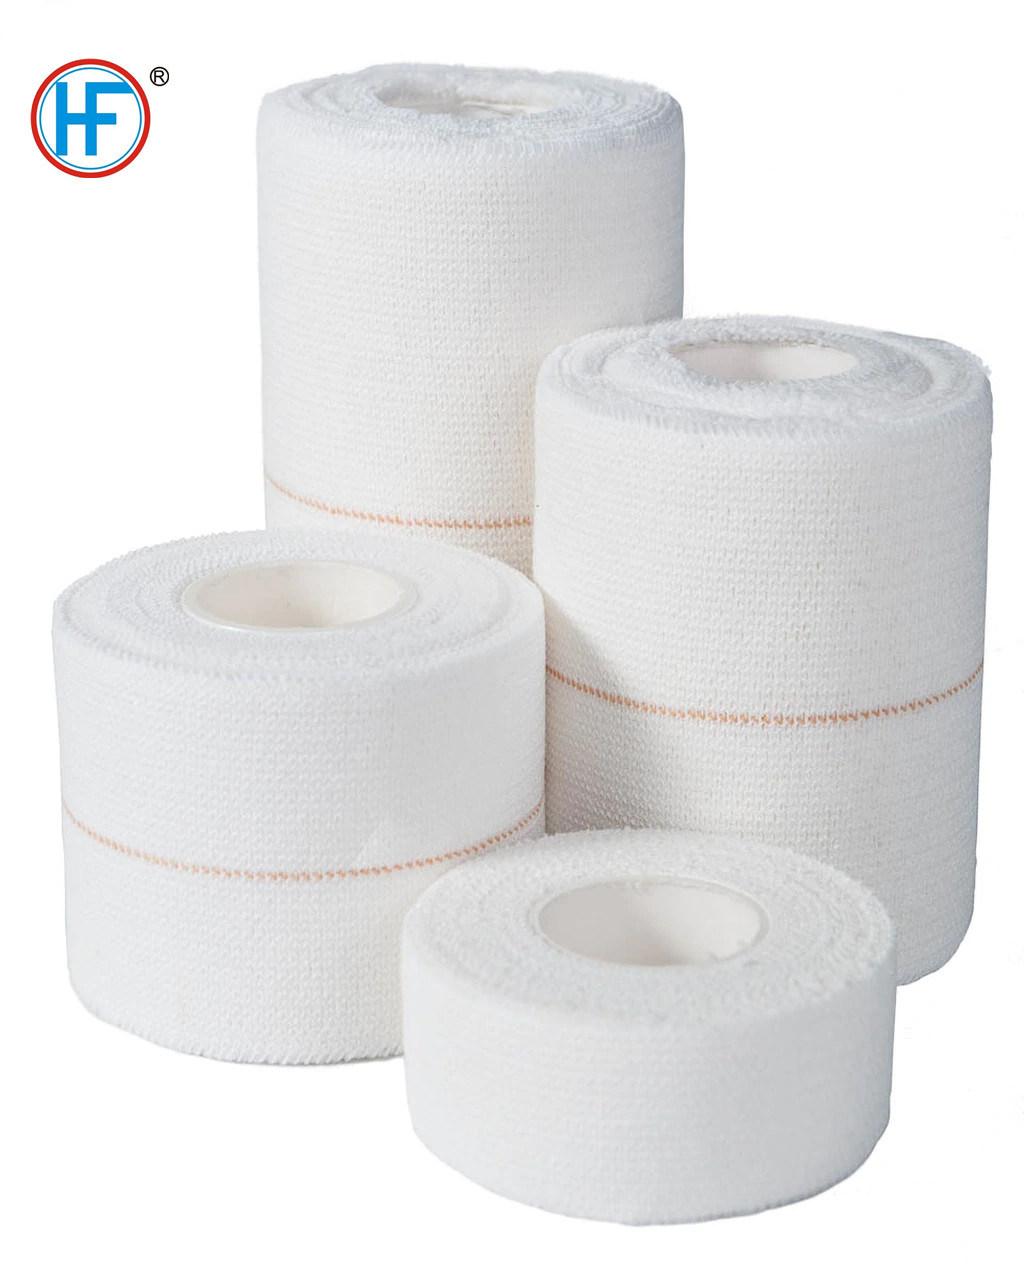 100% Cotton Elastic Adhesive Wrap Bandage White Support Strapping Tape Professional Horse Leg Cohesive Bandage